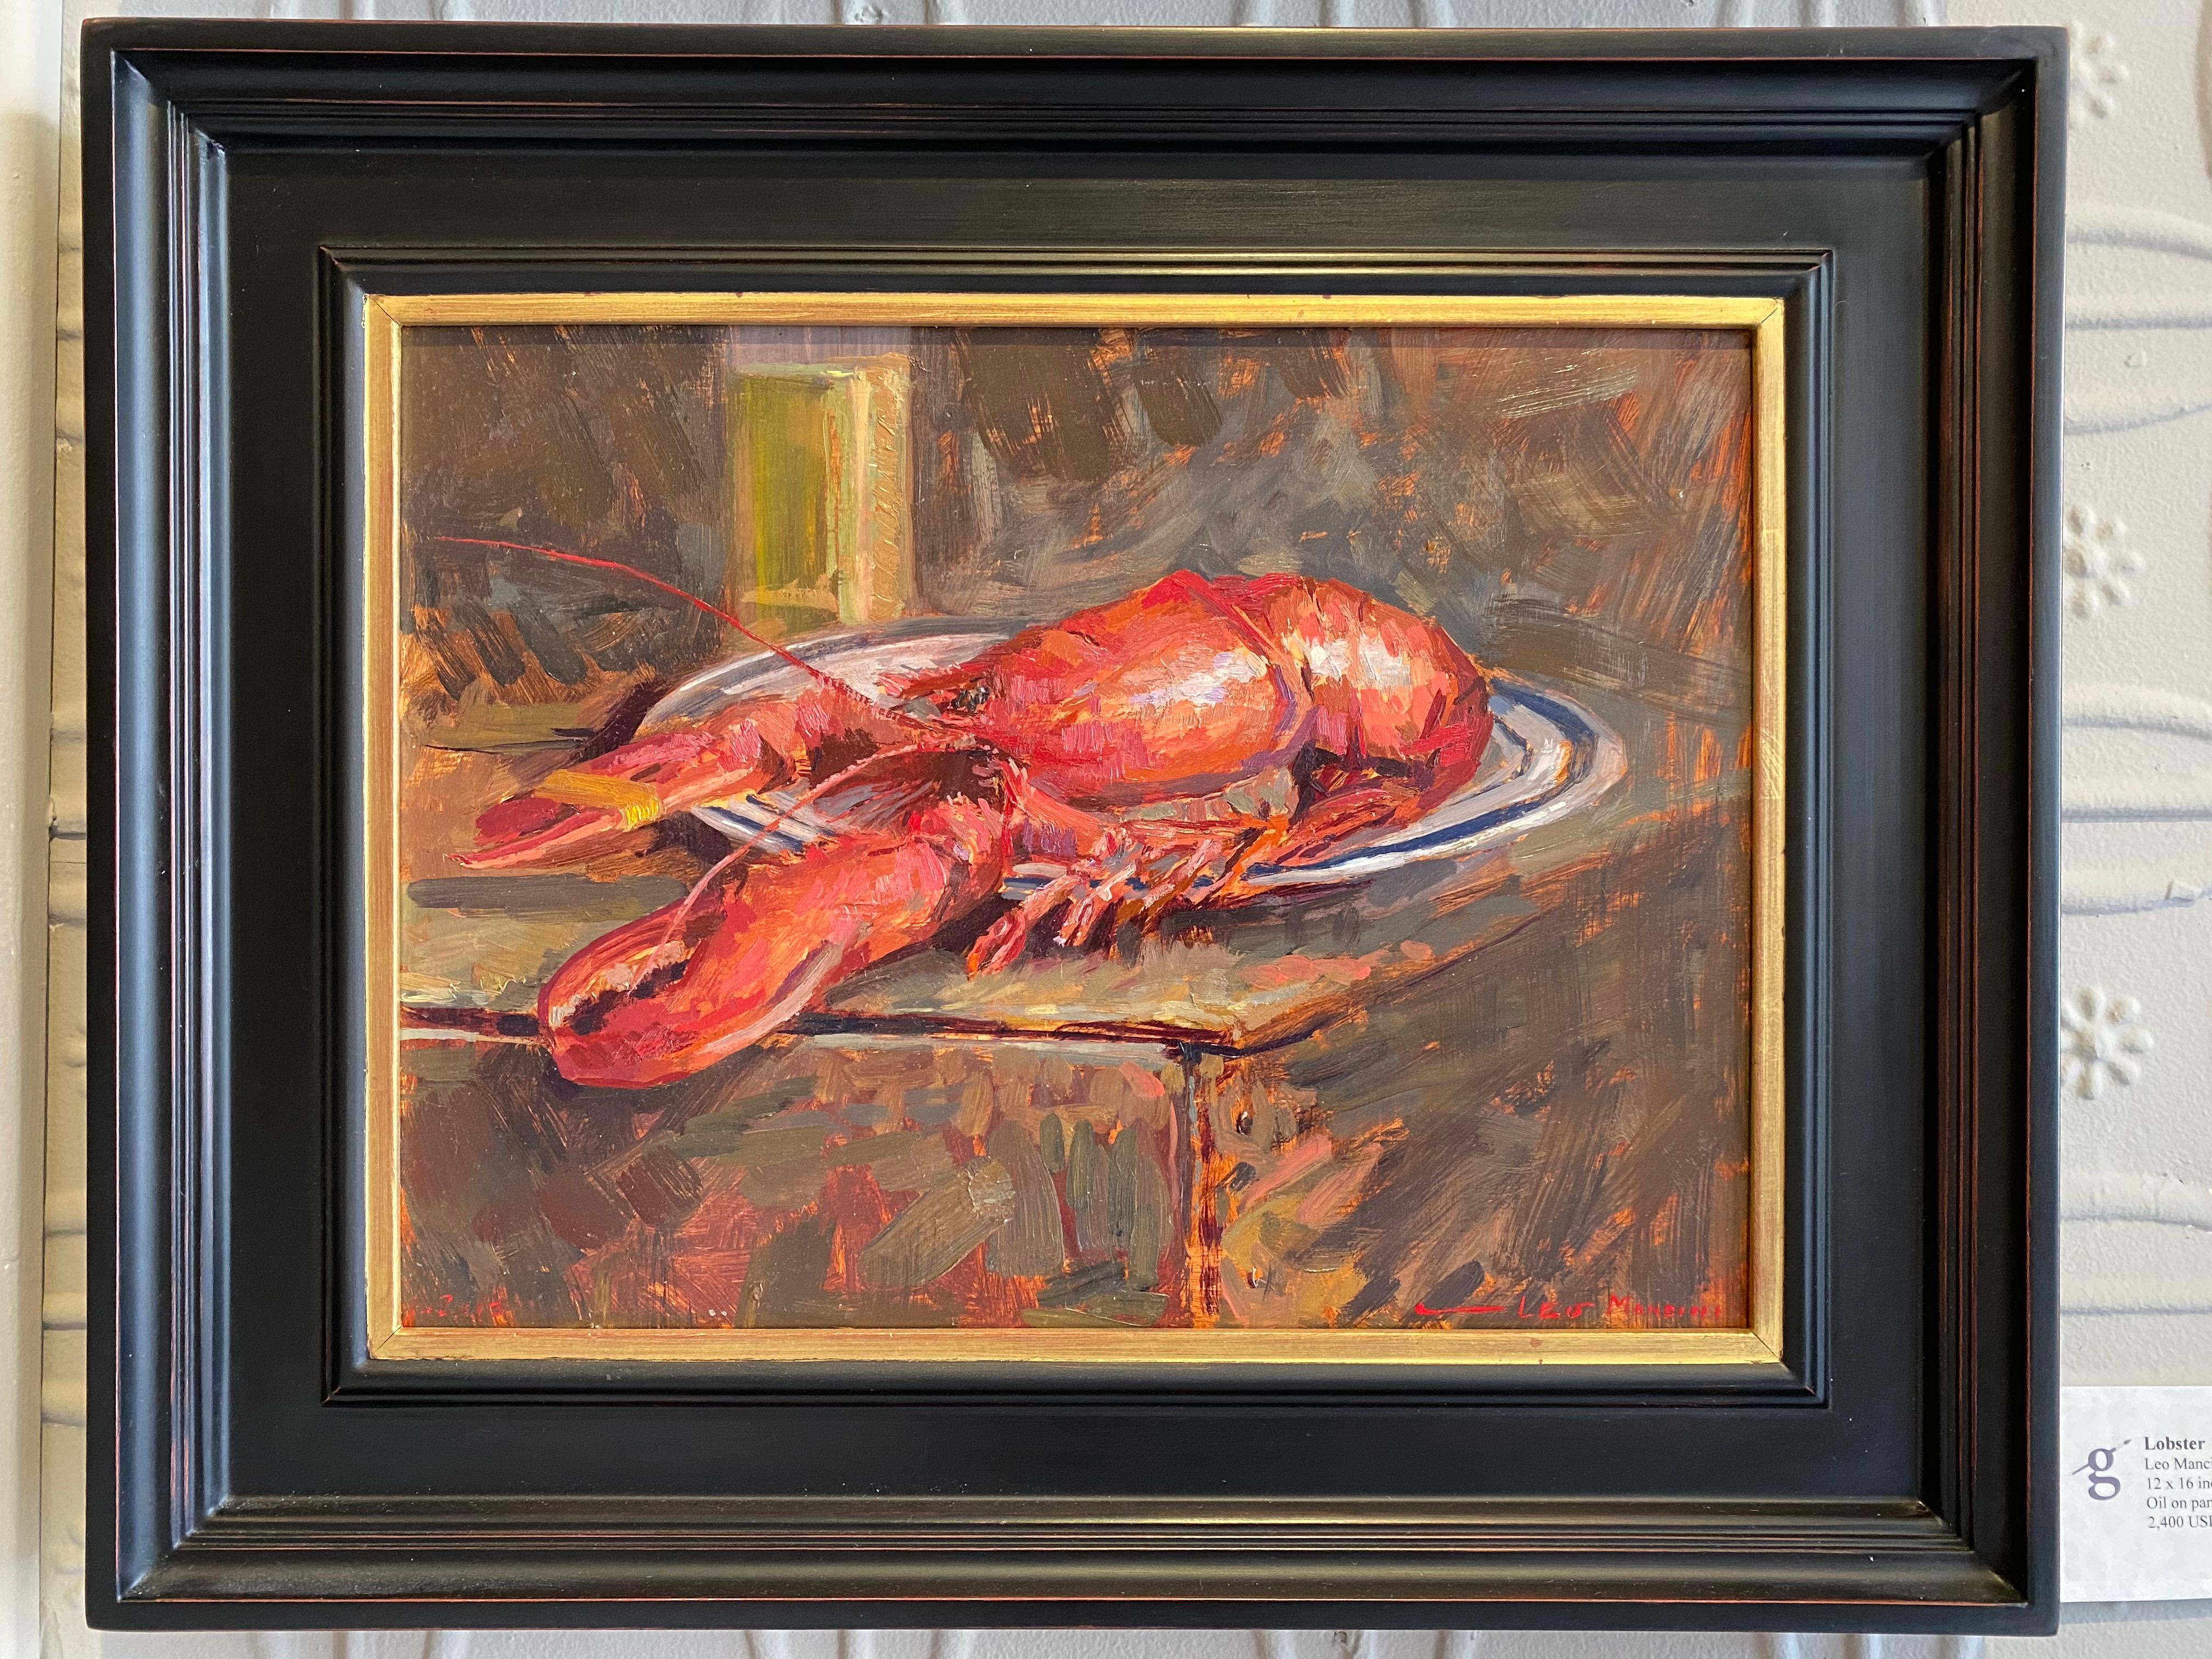 Lobster - Painting by Leo Mancini-Hresko